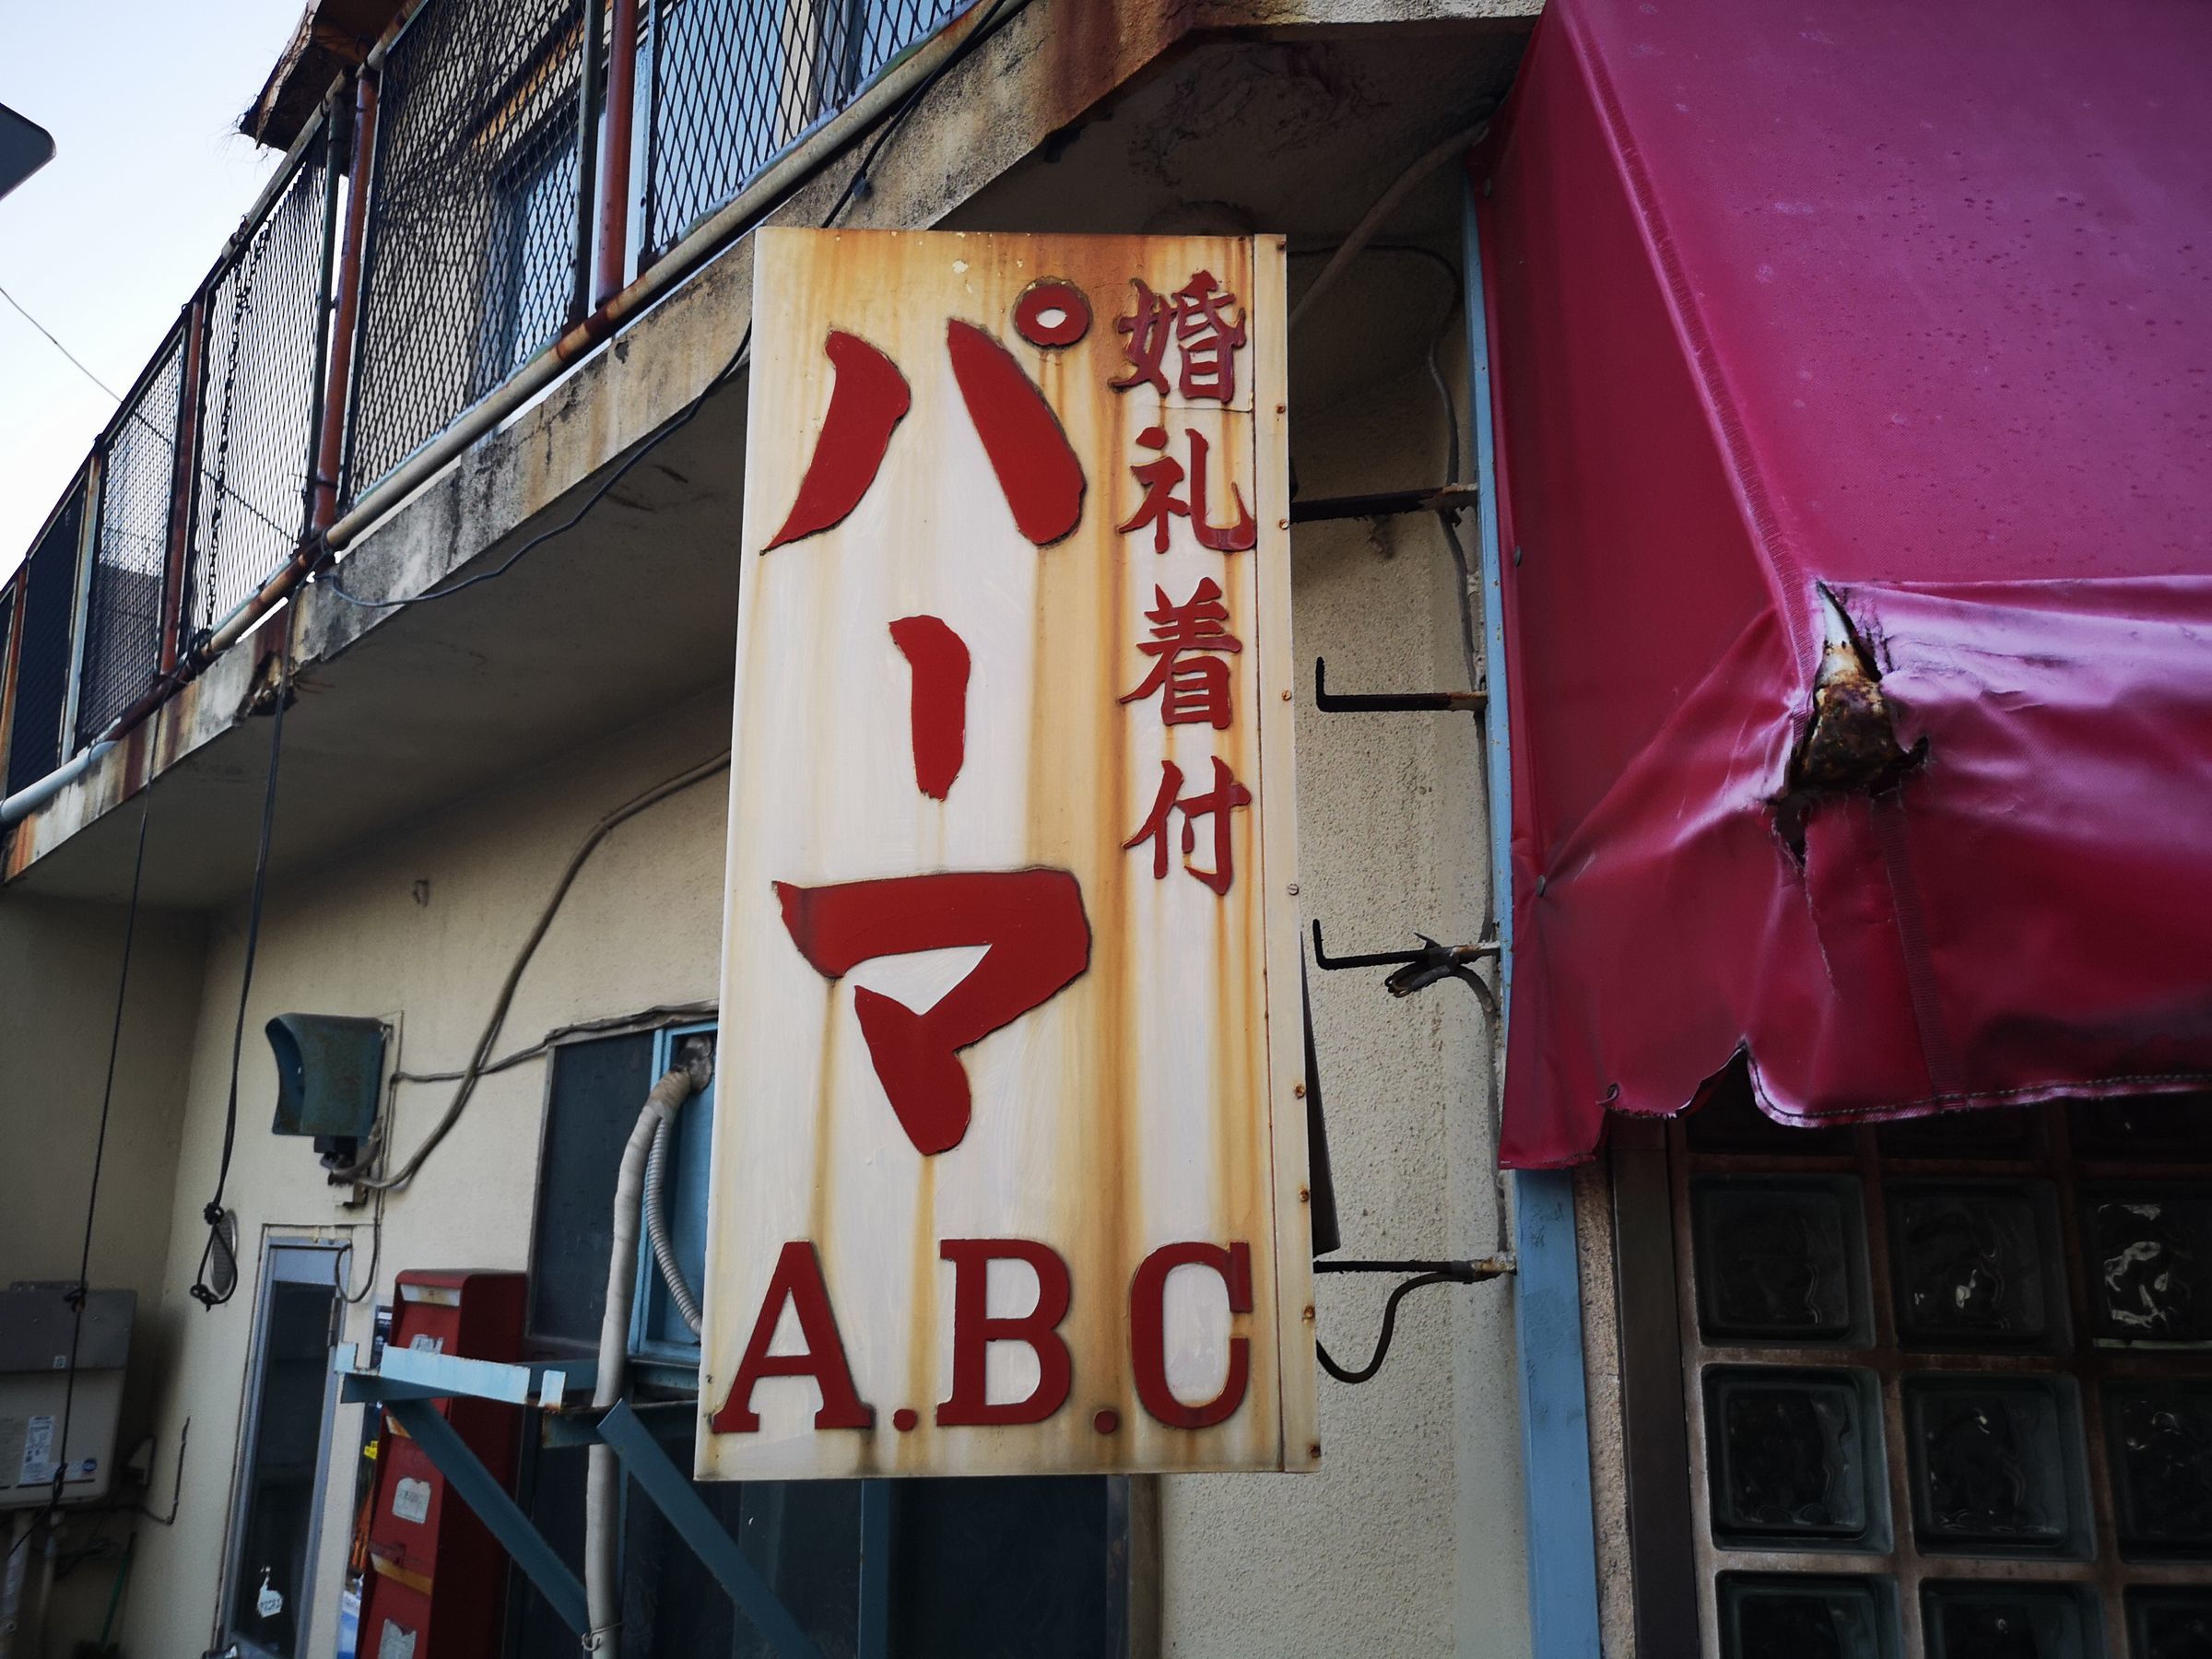 足立区宮城 Abc美容室 Barberミヤギ 東京あるけあるけ